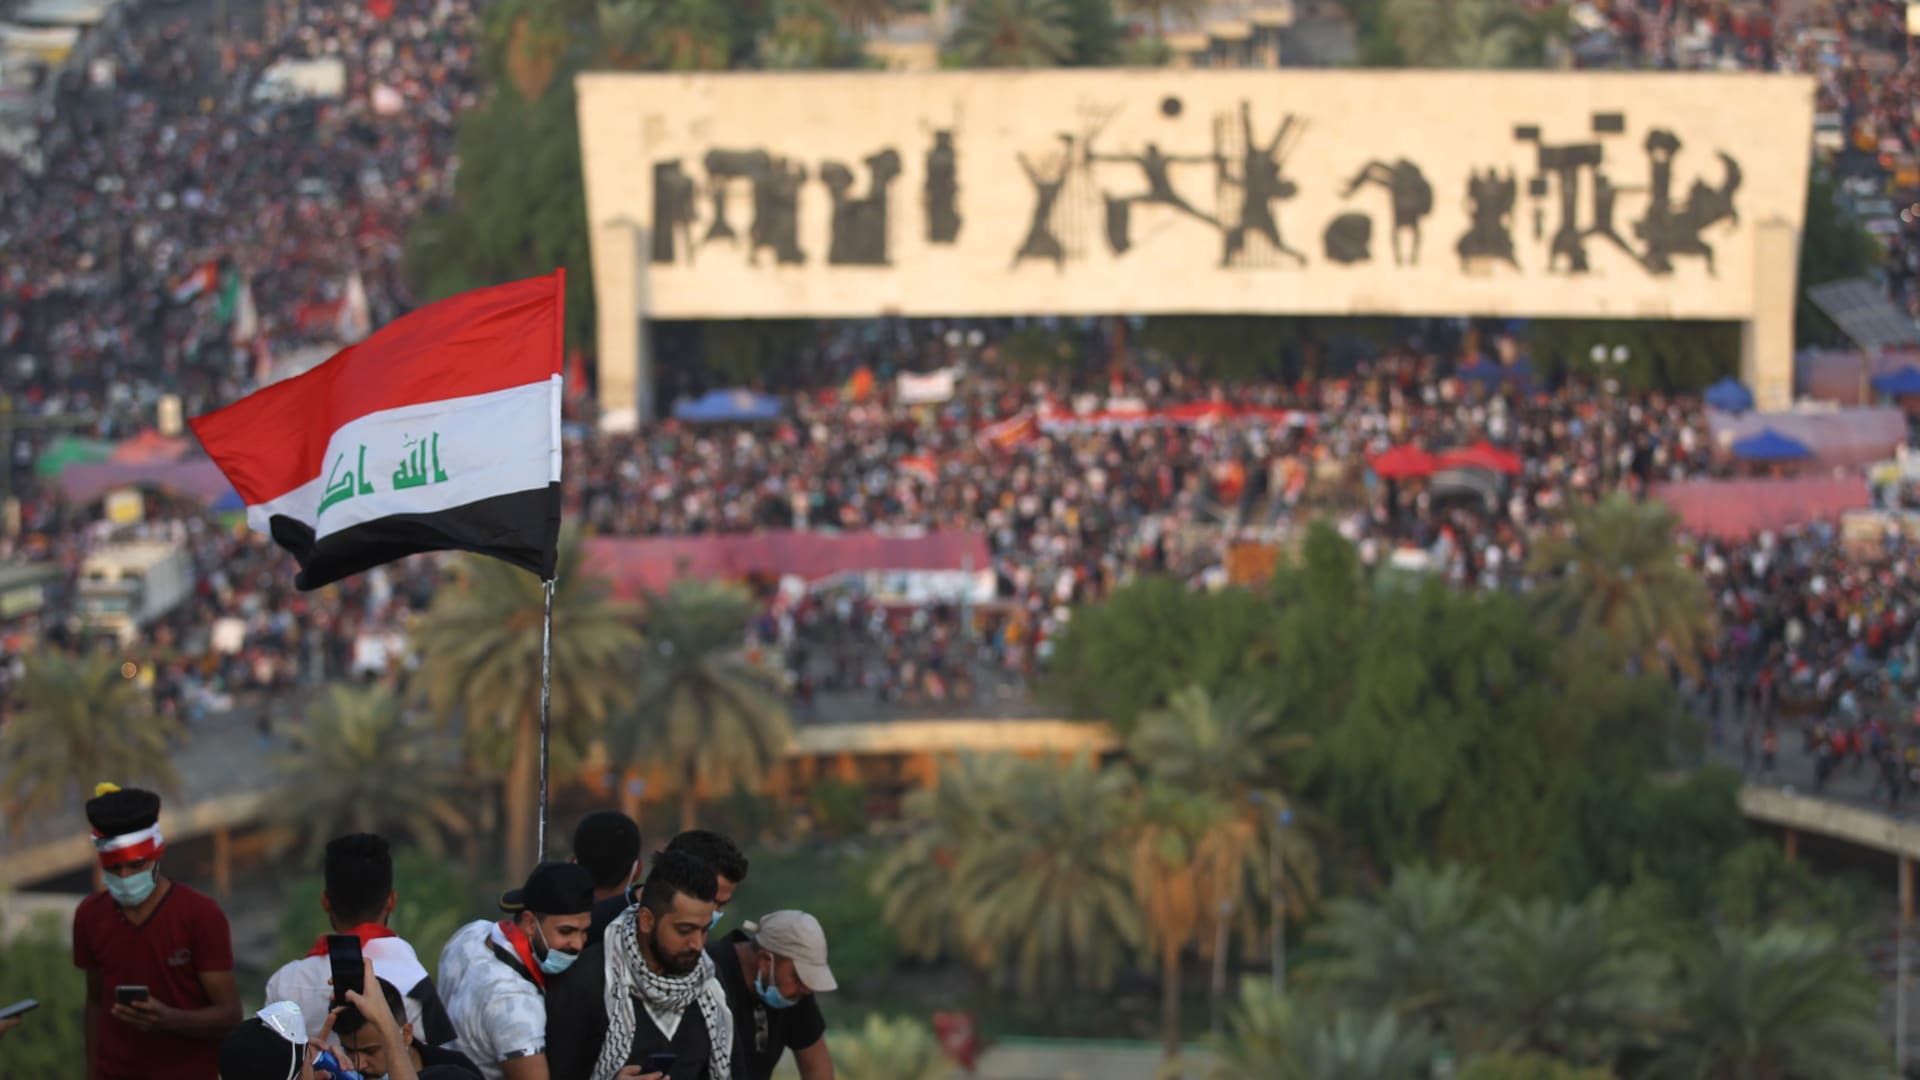 المحتجون العراقيون يُقمعون بسبب اعتراضهم على البطالة والفساد